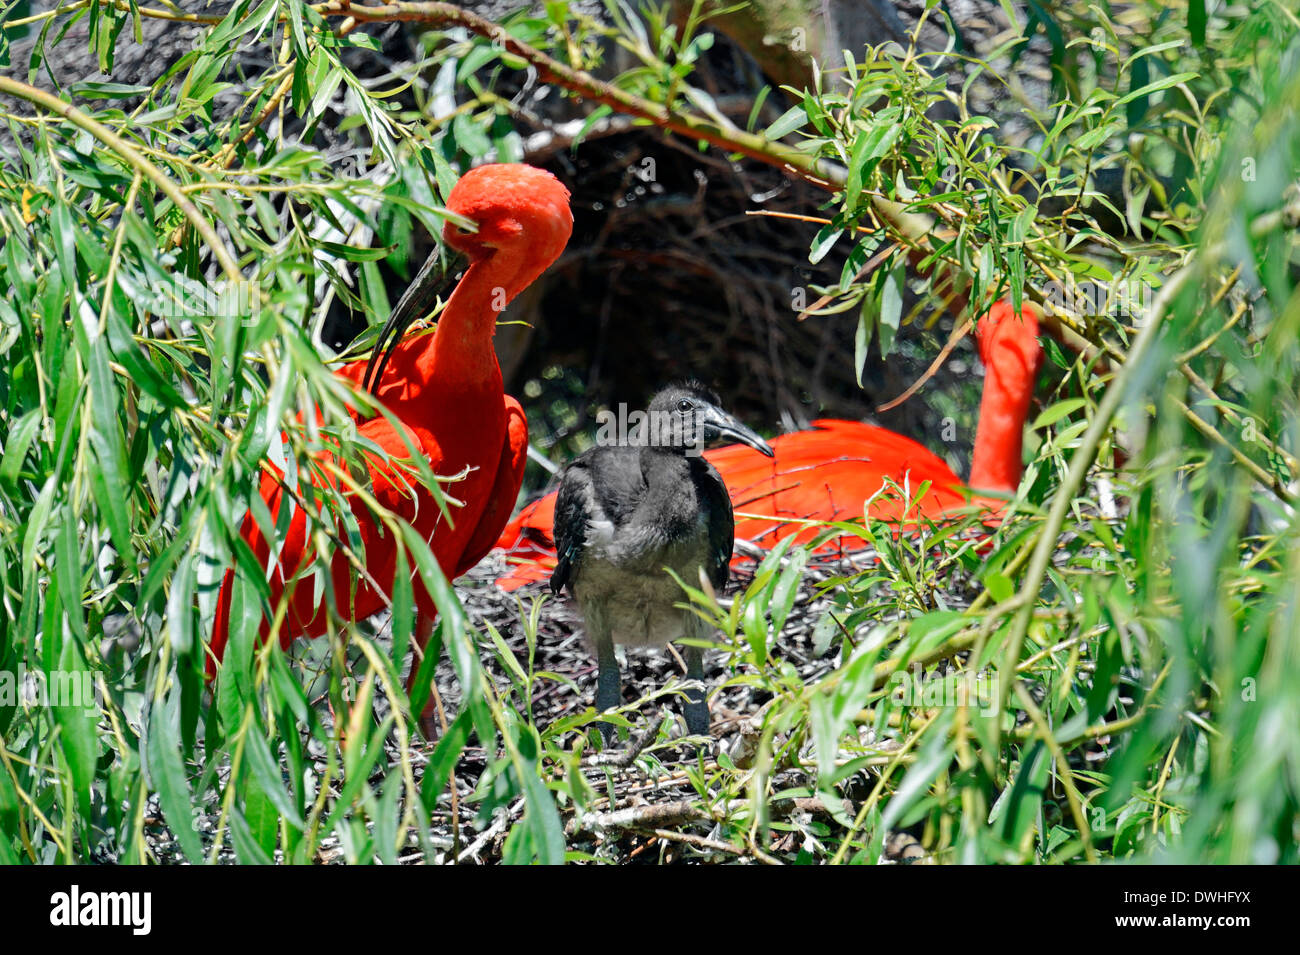 Ibis rouge (Eudocimus ruber) avec les jeunes dans le nid Banque D'Images